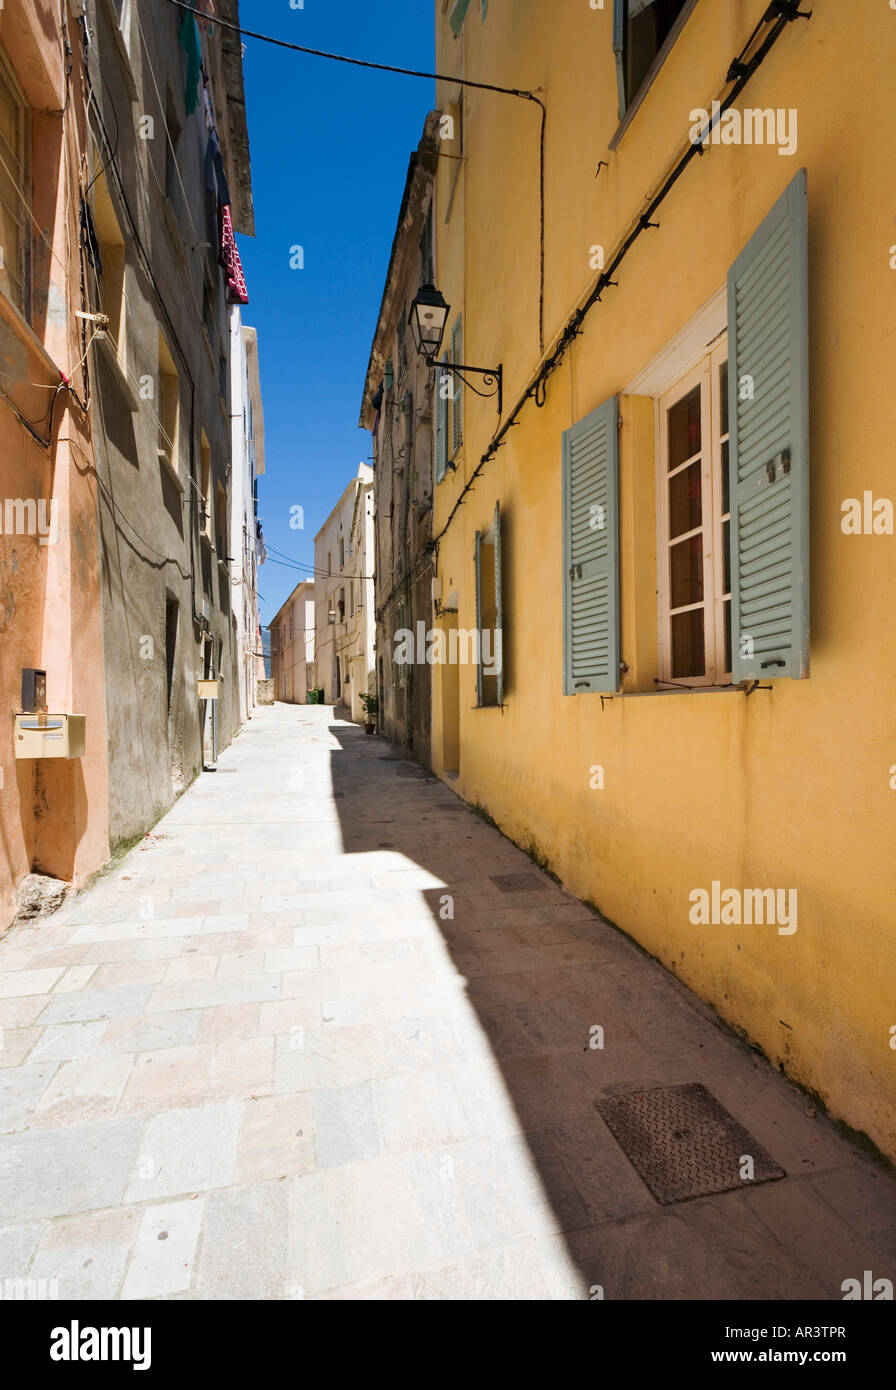 Rue et maisons typiques dans Terra Nova, Citadelle, Bastia, Corse, France Banque D'Images